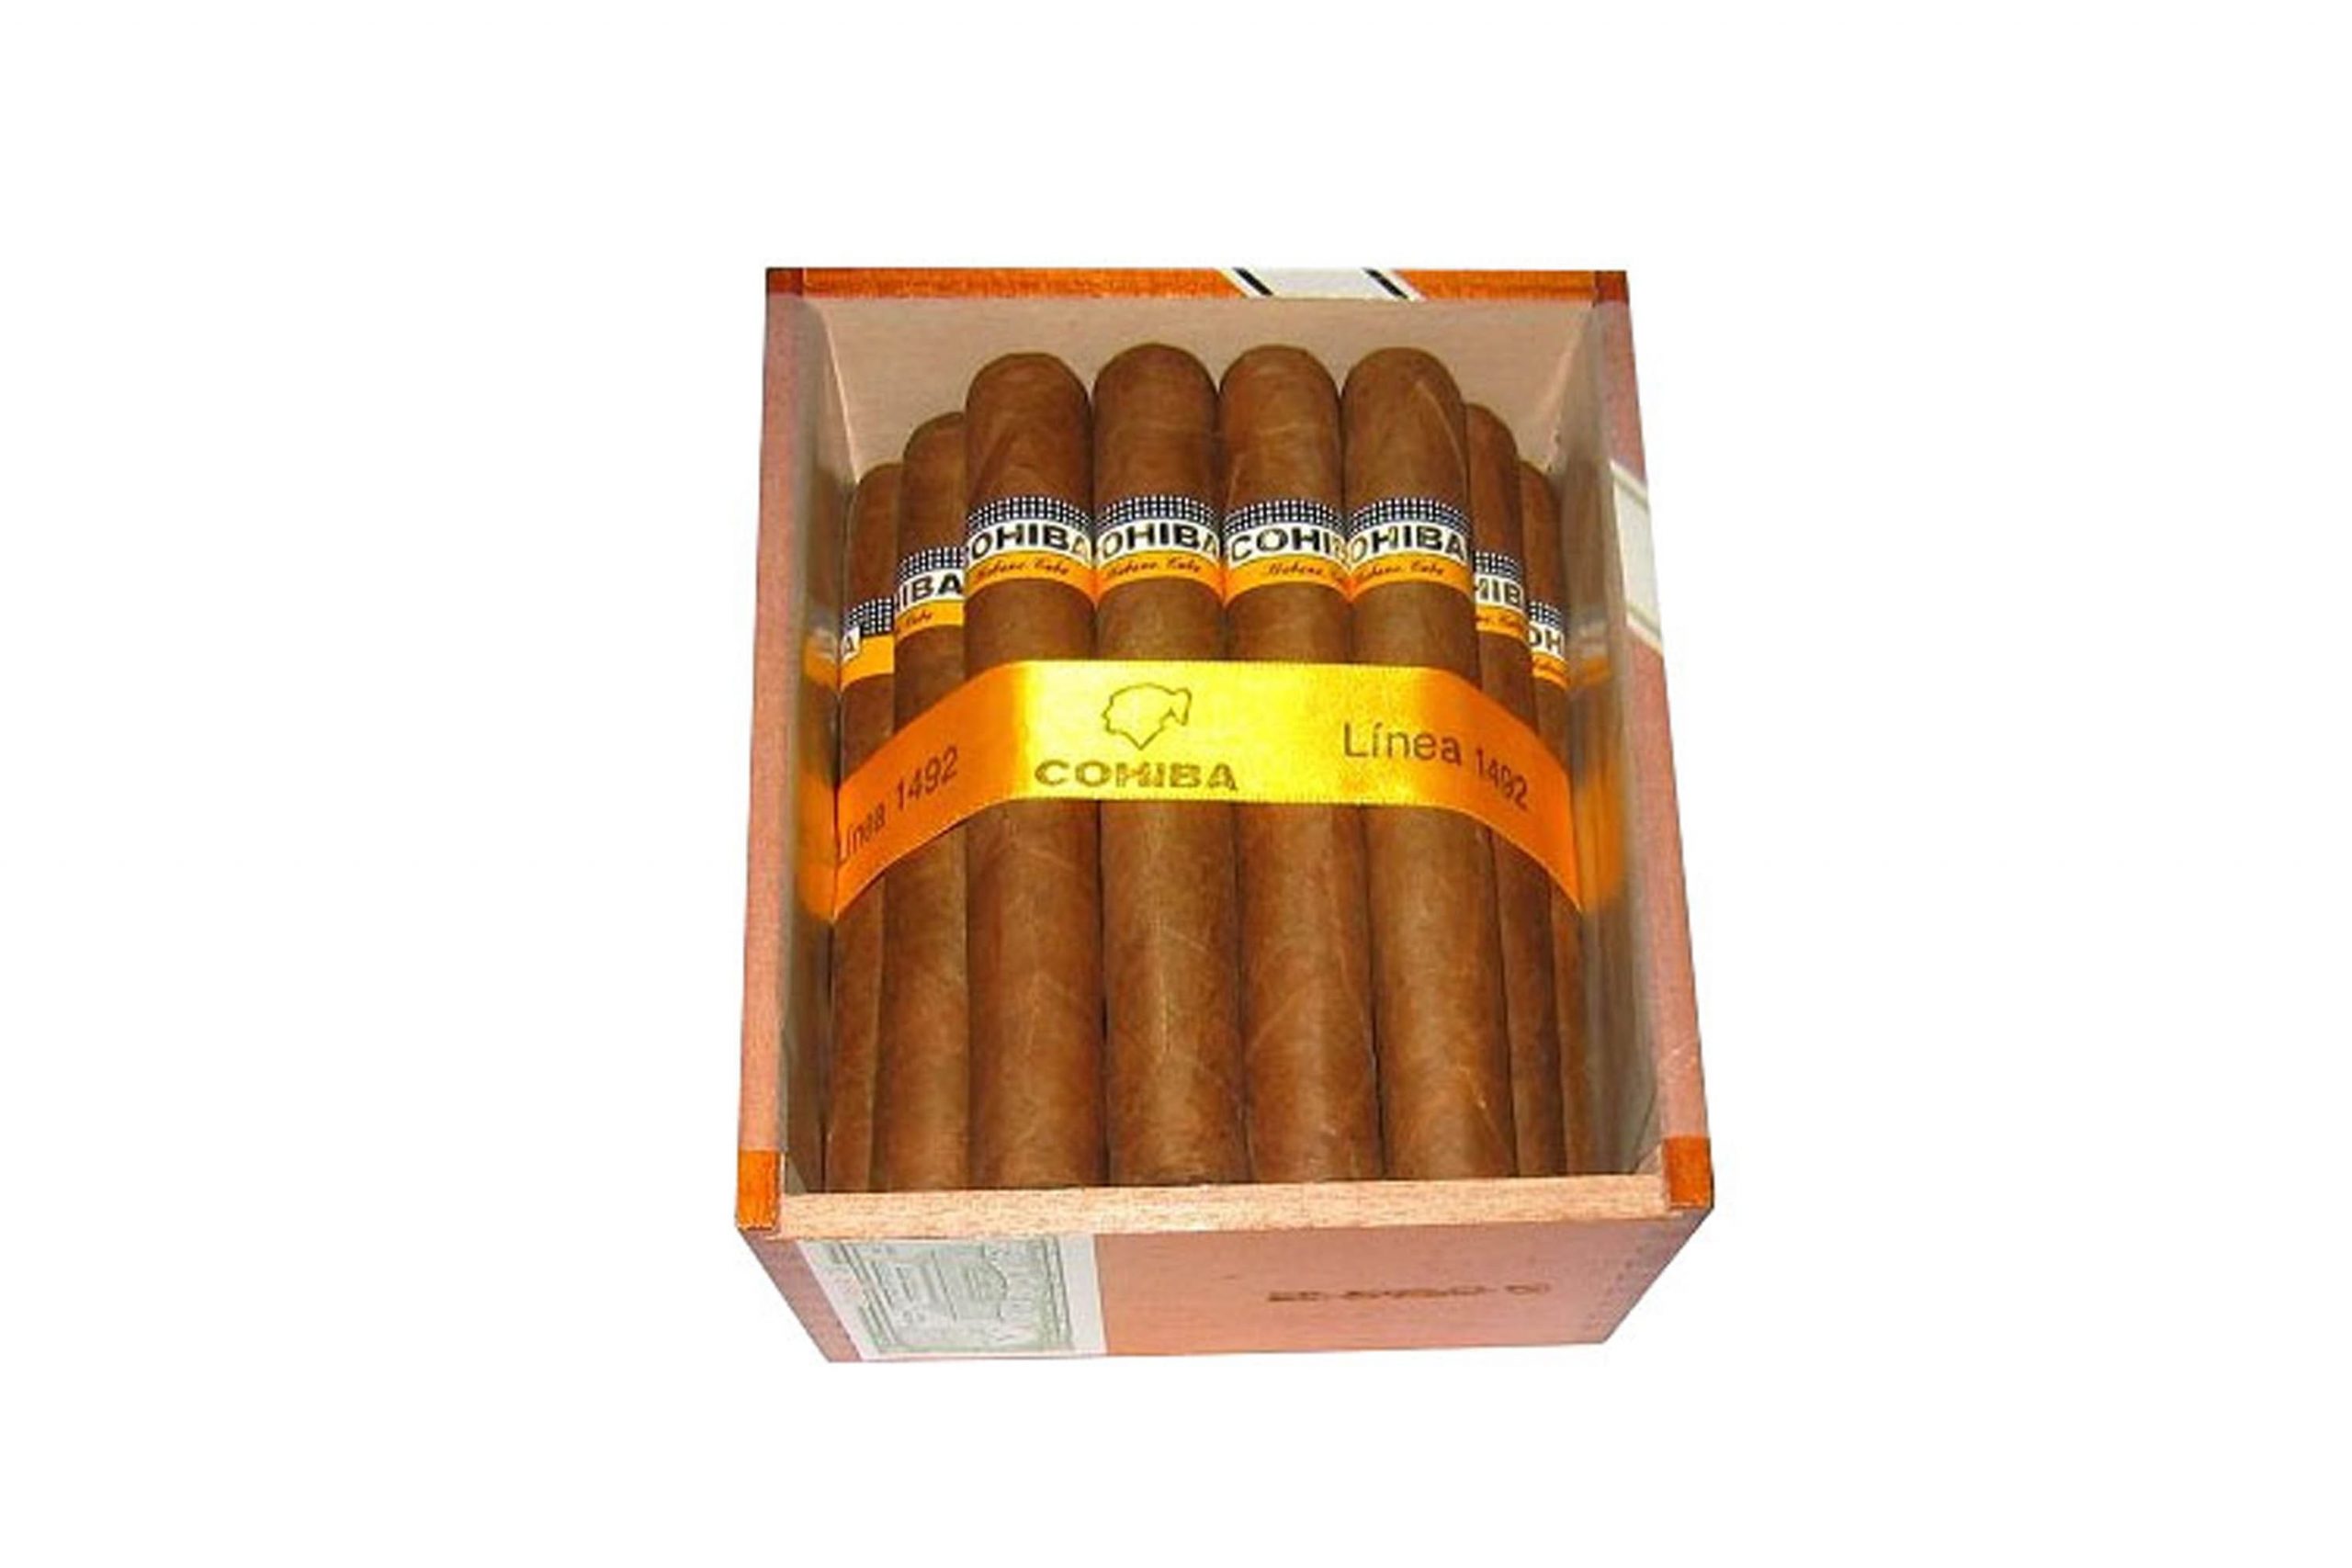 Cohiba Siglo VI Zigarre - EGM-Zigarren